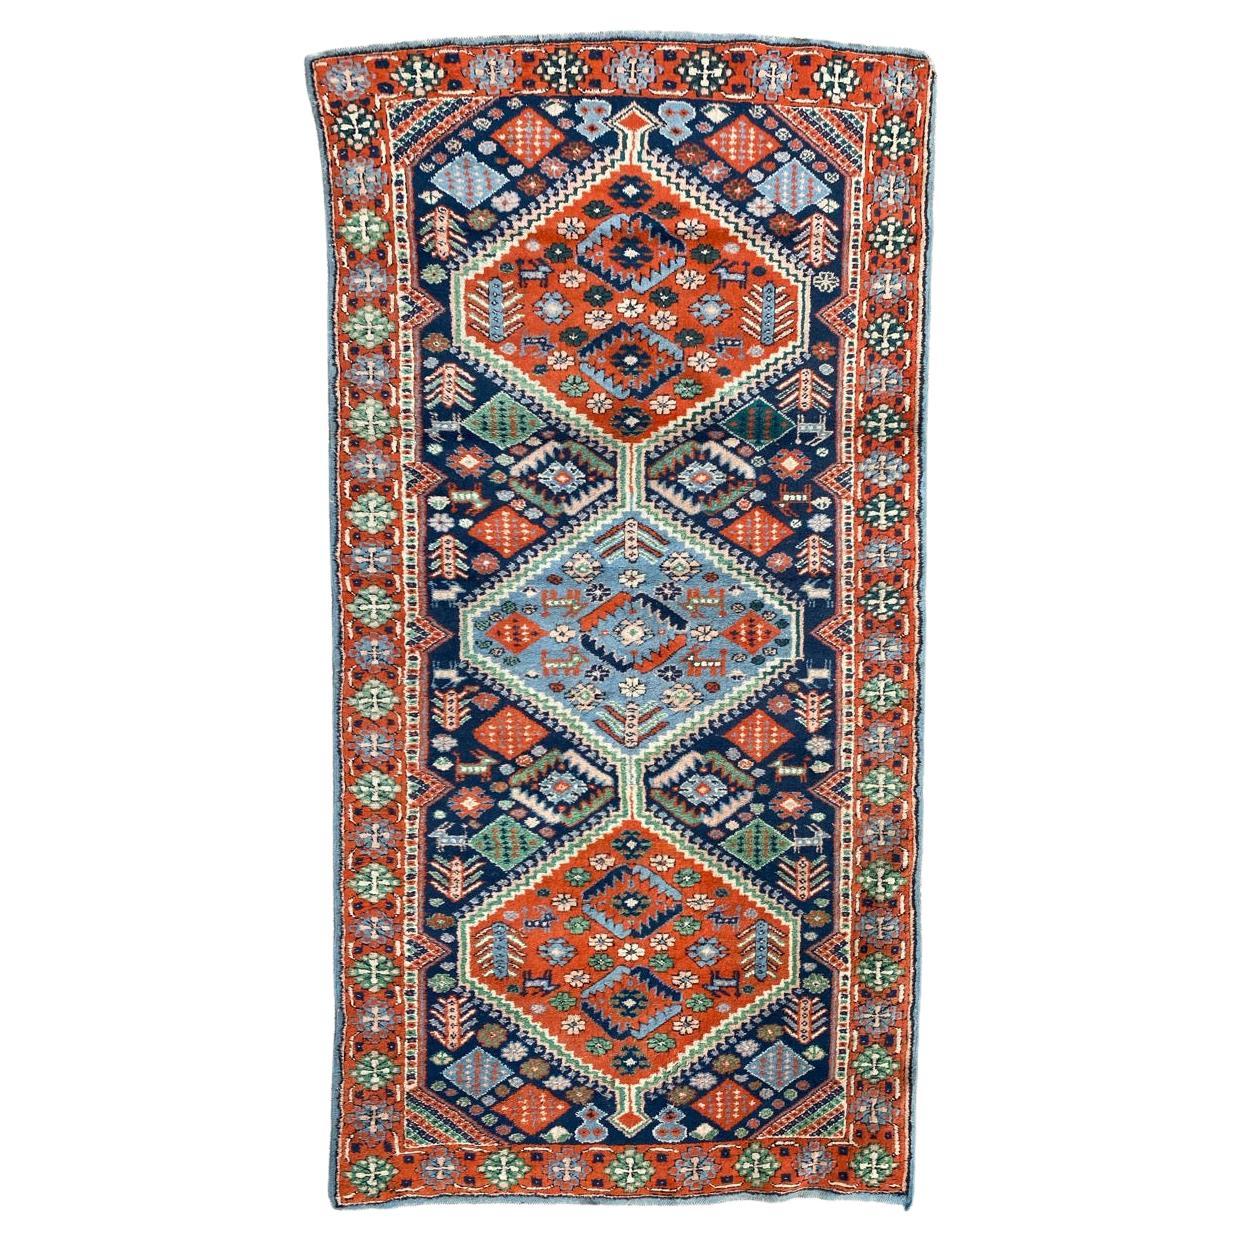 Le joli tapis turc vintage de Bobyrug